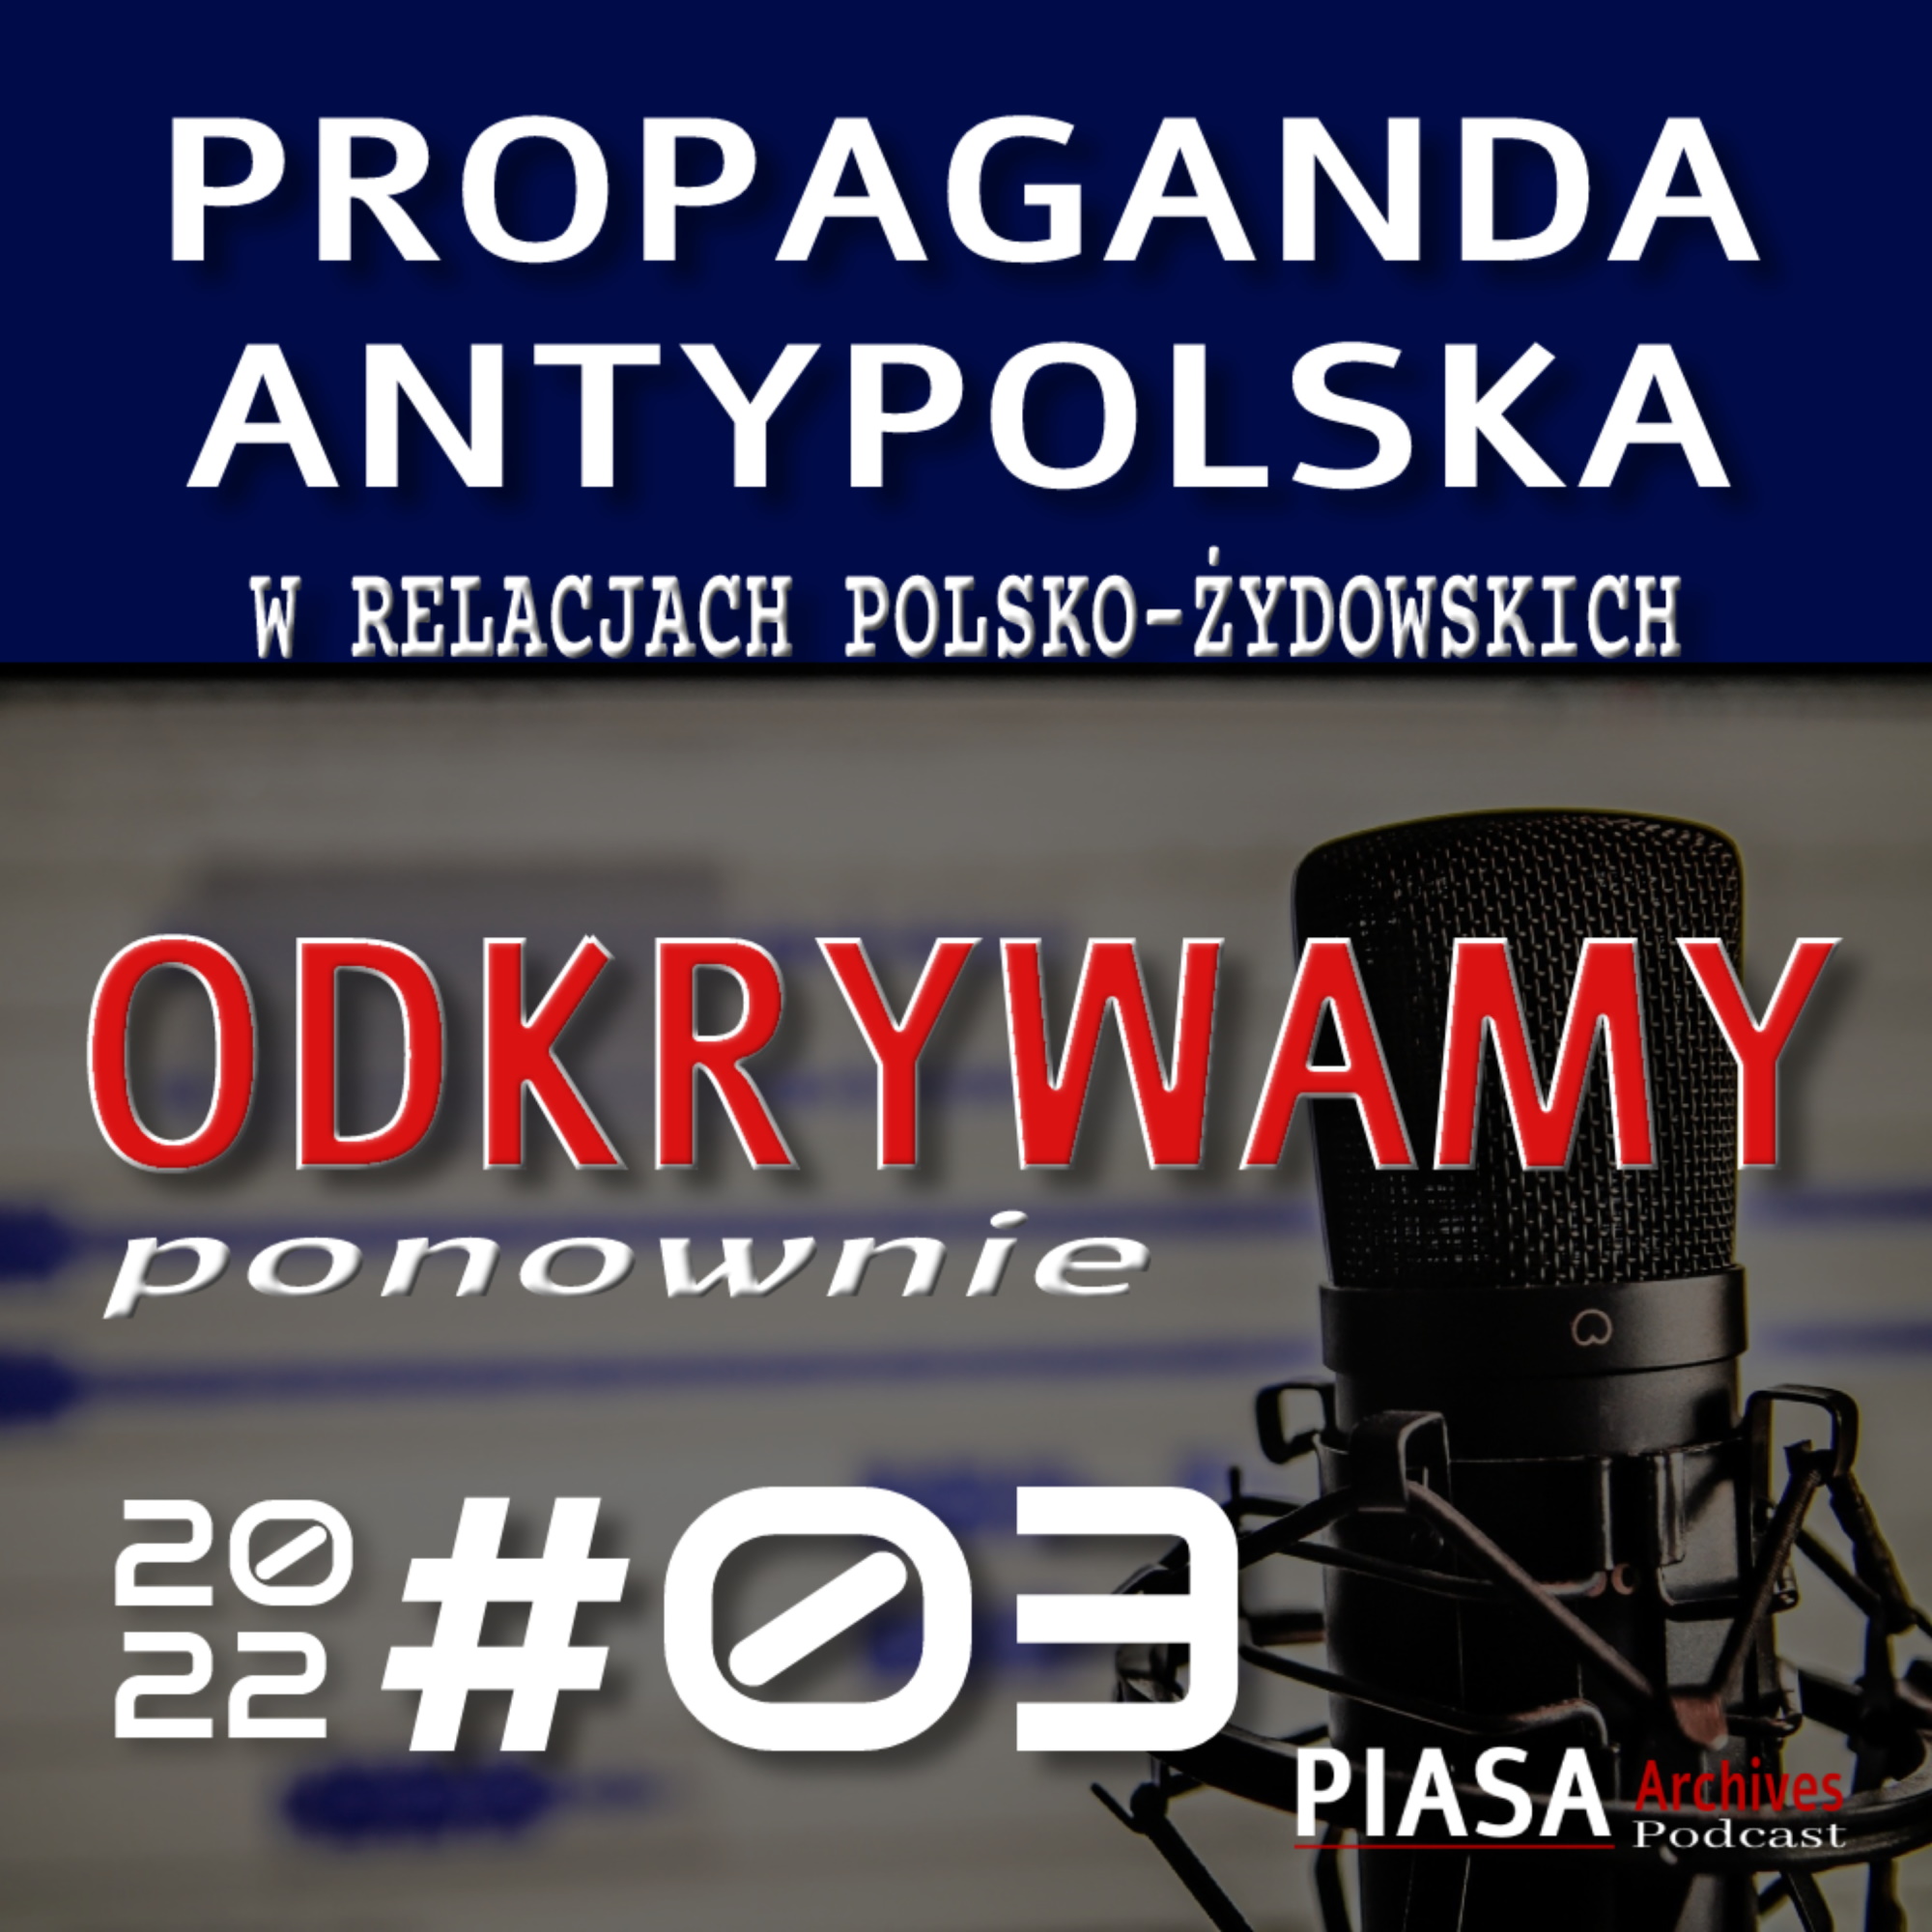 Propaganda antypolska w relacjach polsko-żydowskich